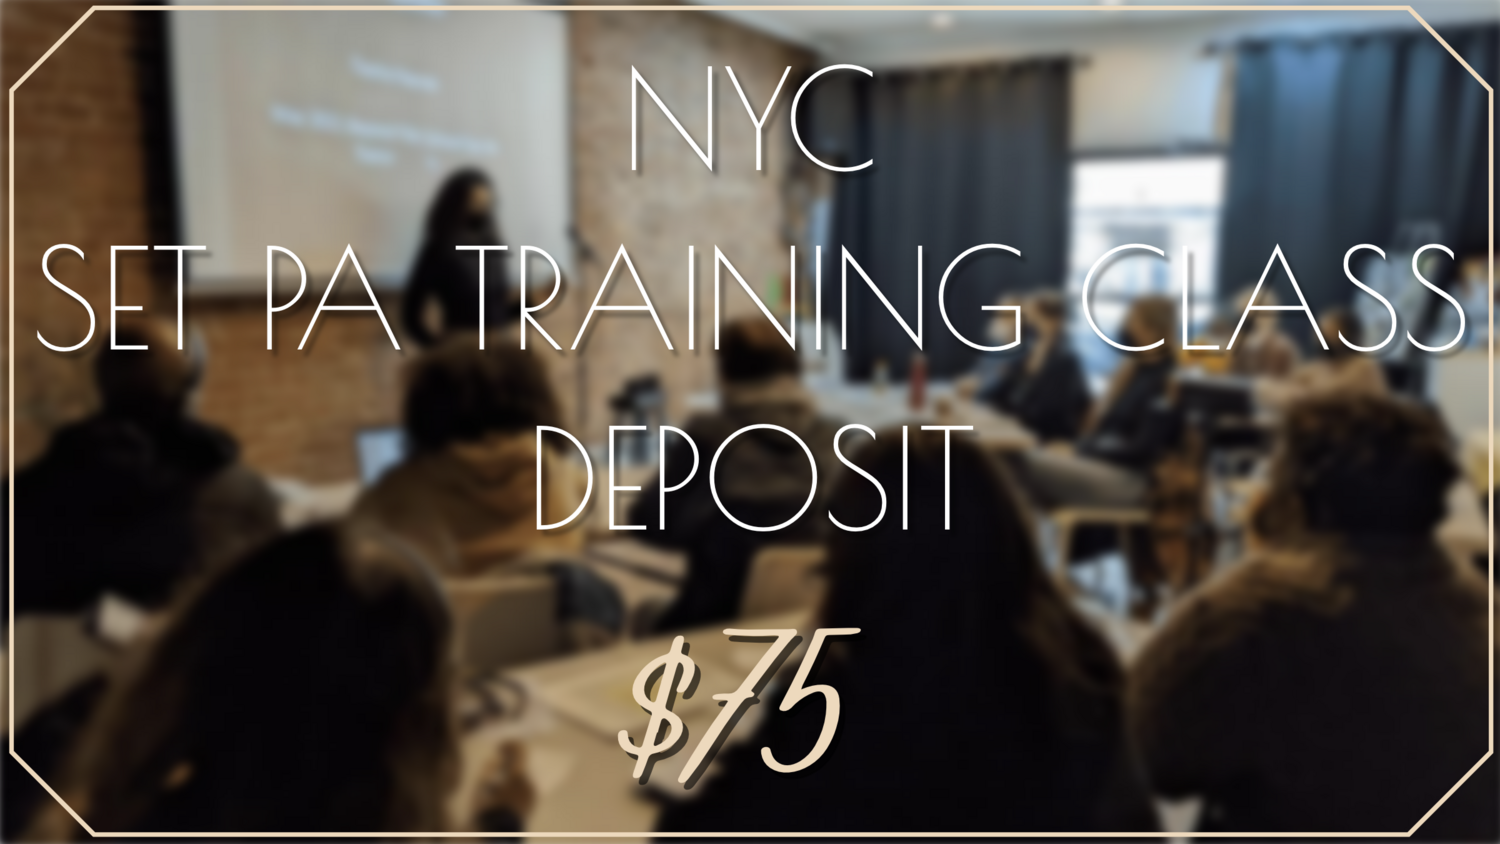 NYC Set PA Training Class - Deposit